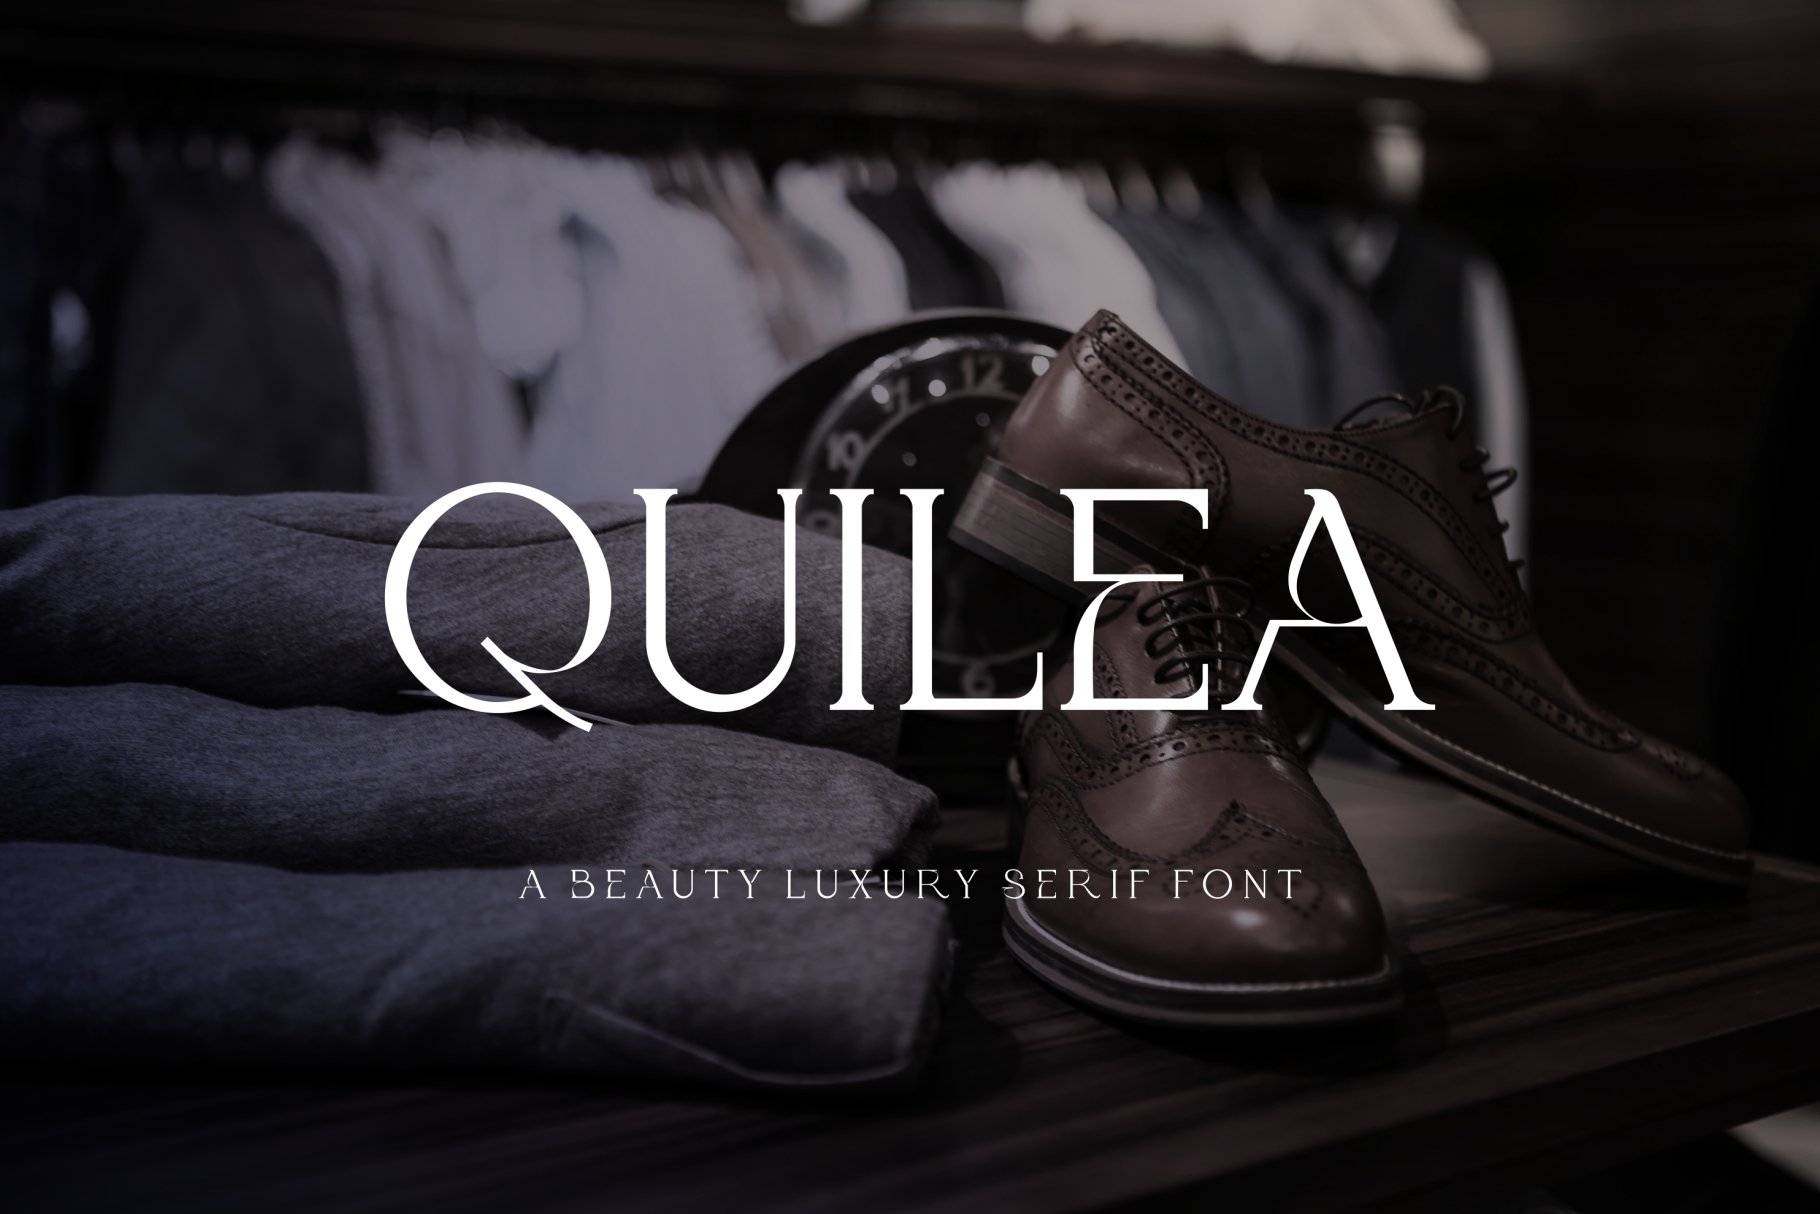 Quiela - Luxury Serif Font preview image.